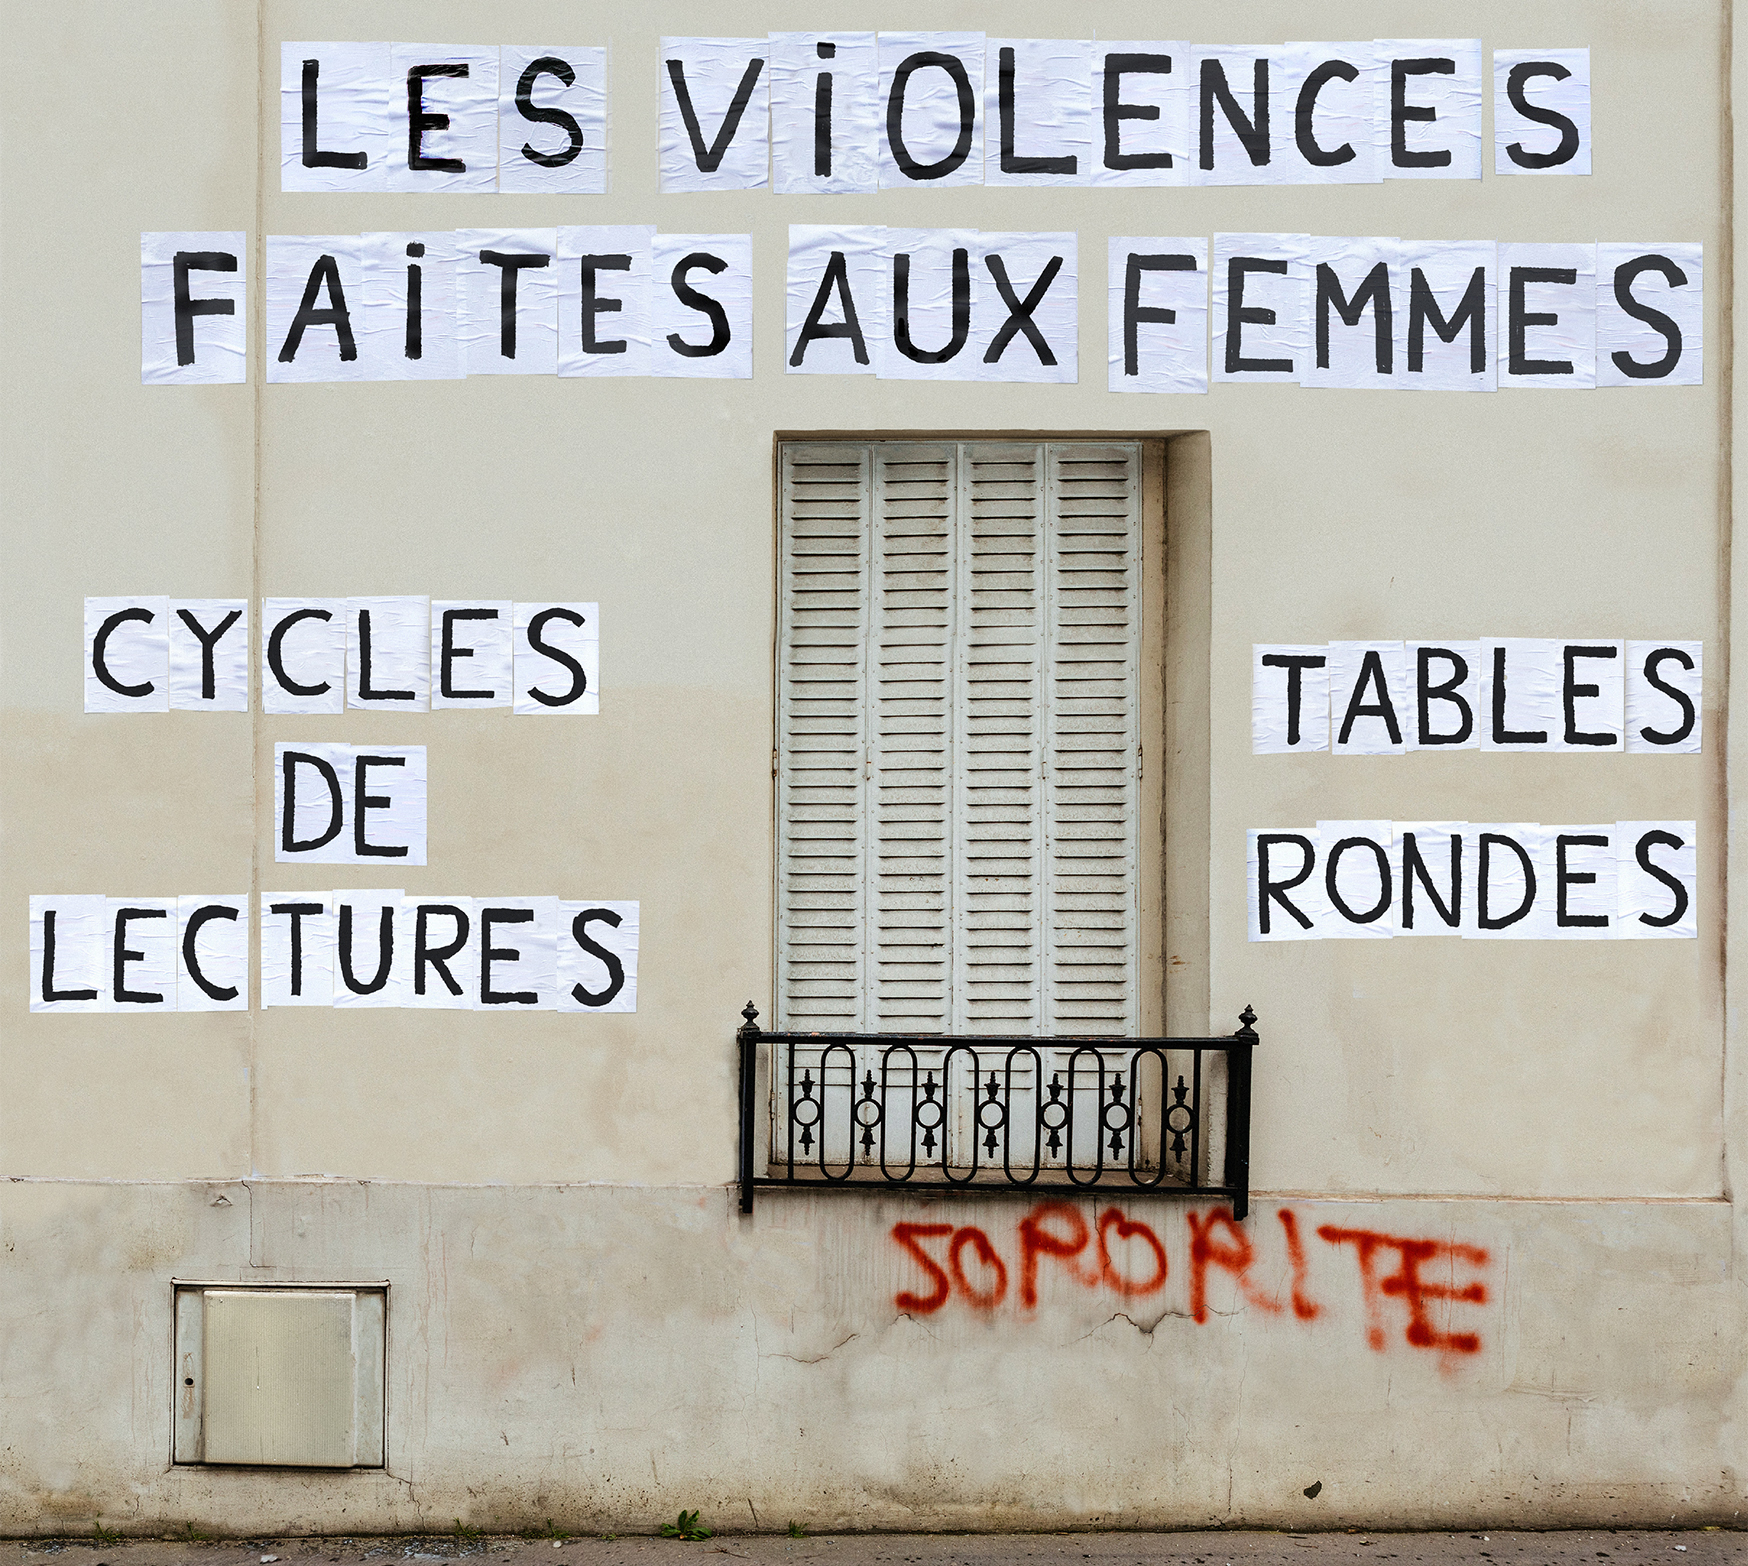 Théâtre La Boutonnière, Les Violences faites aux femmes